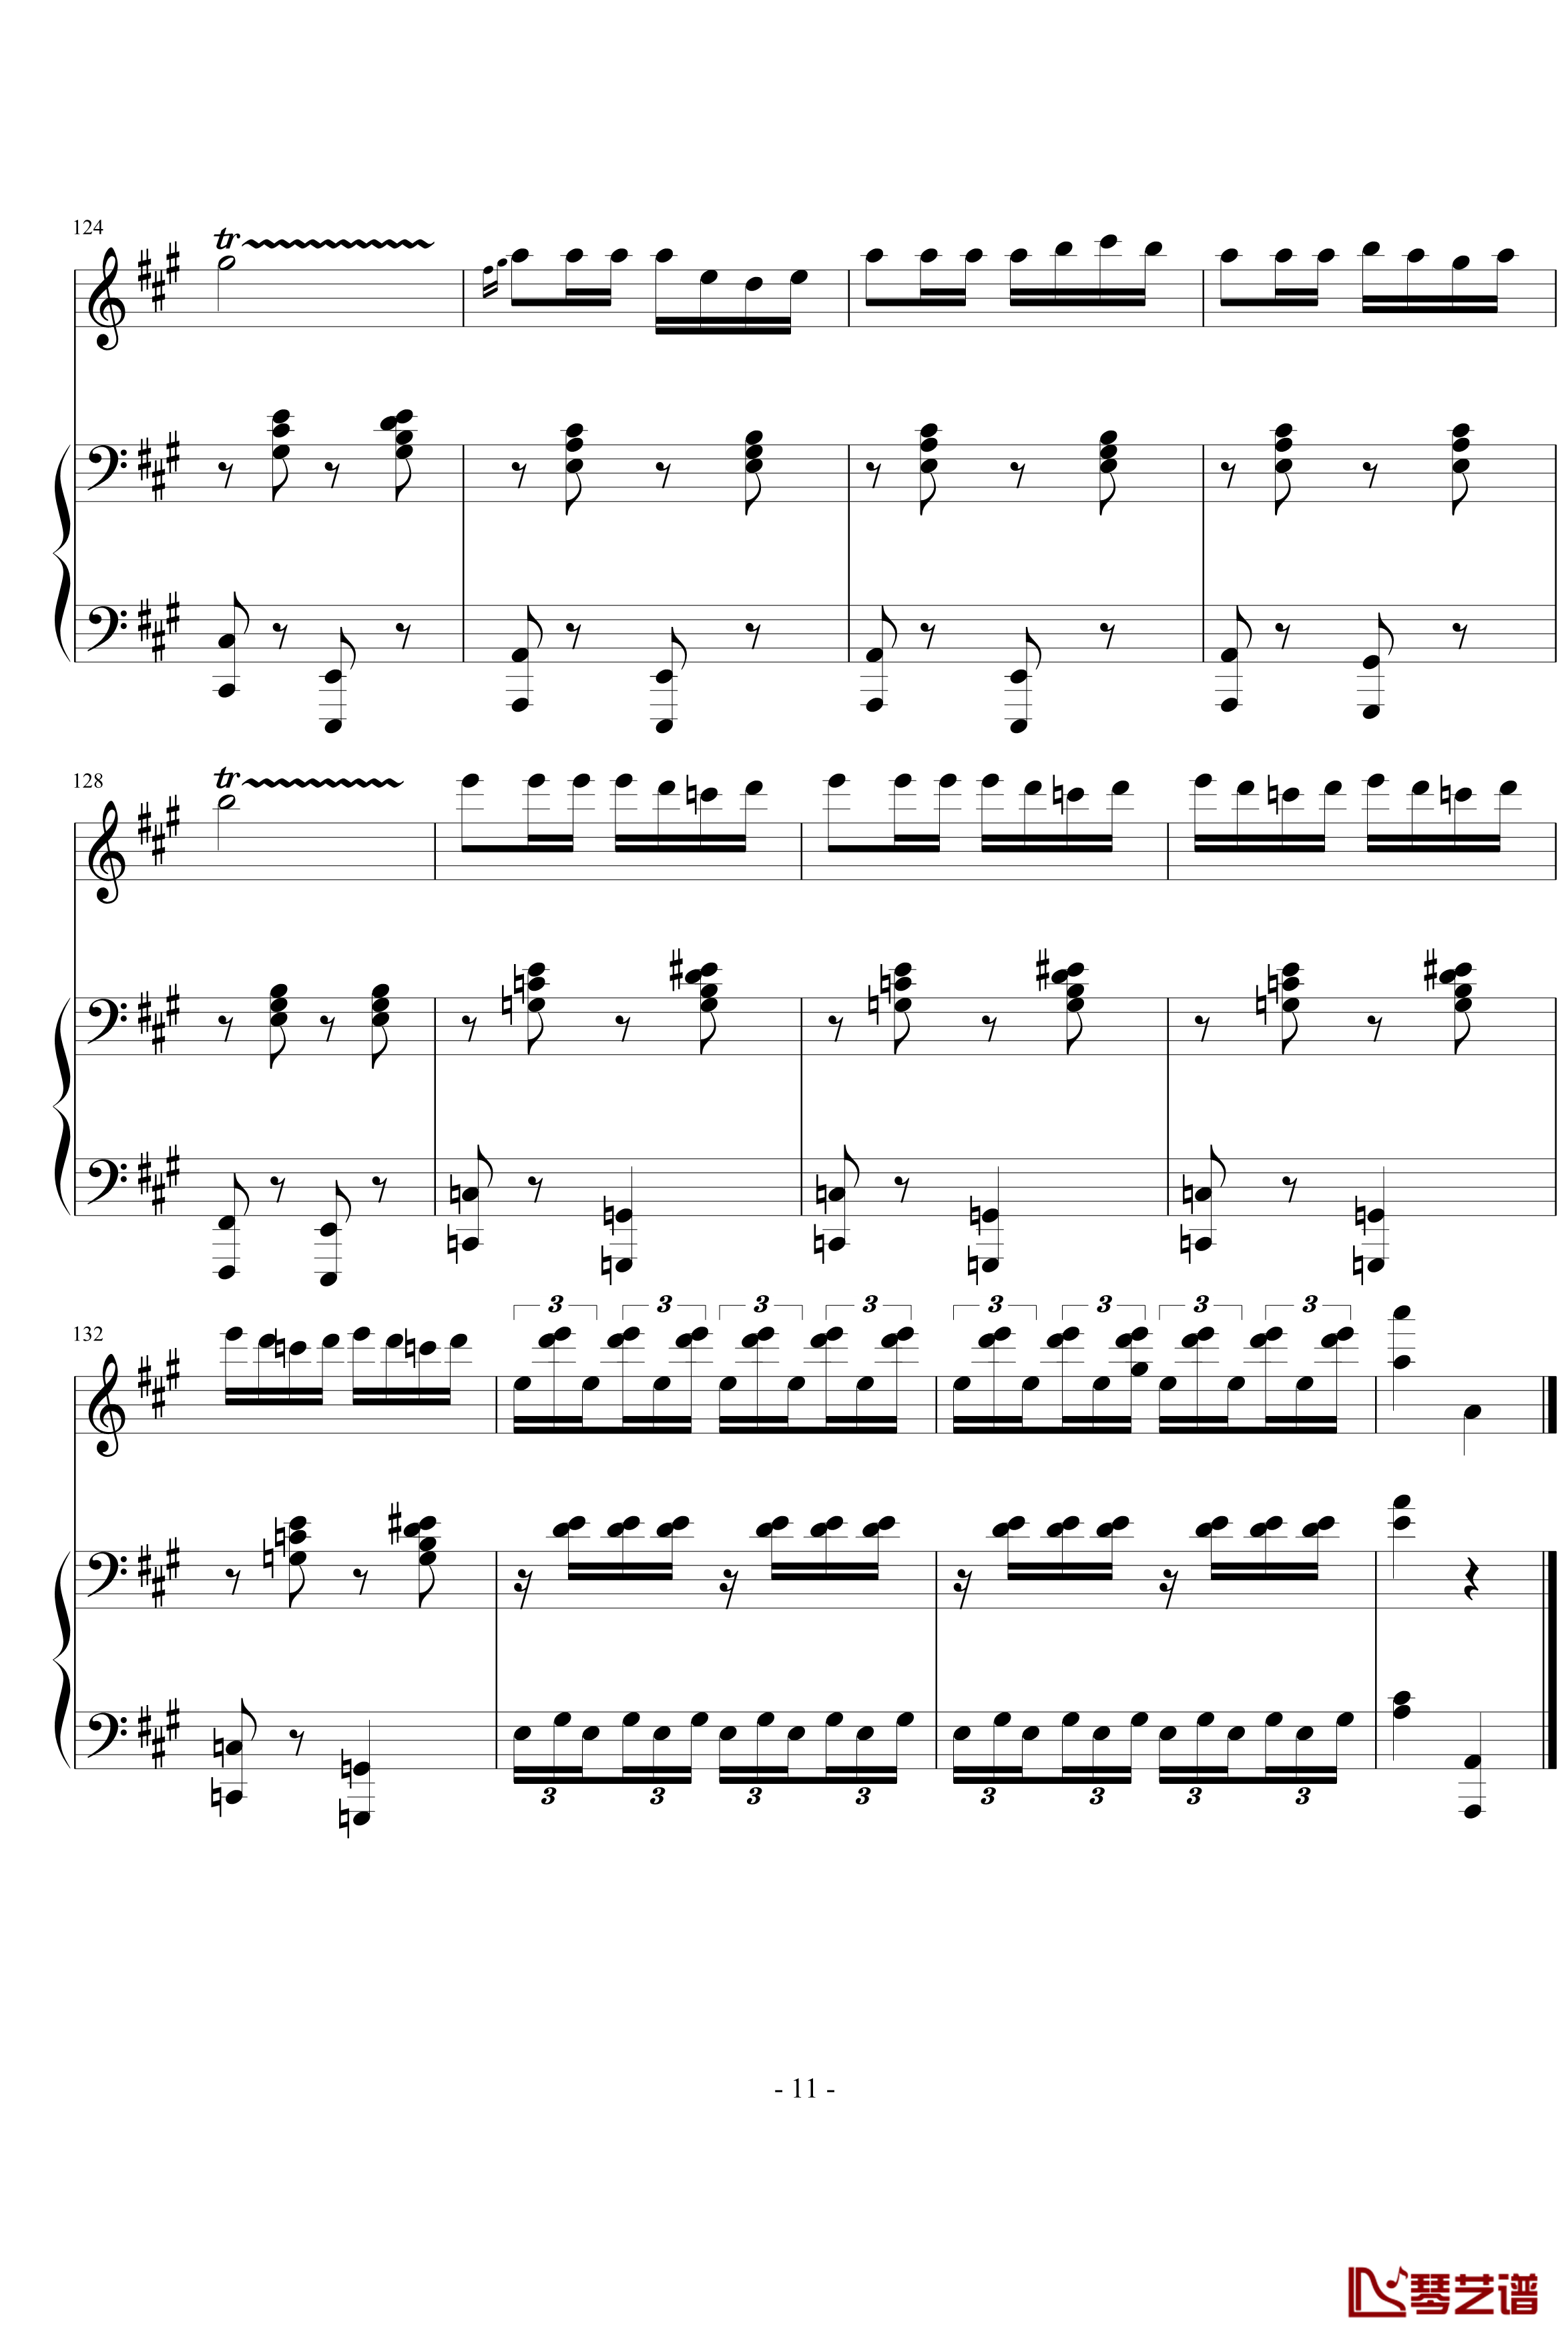 卡门木琴和钢琴钢琴谱-比才-Bizet11